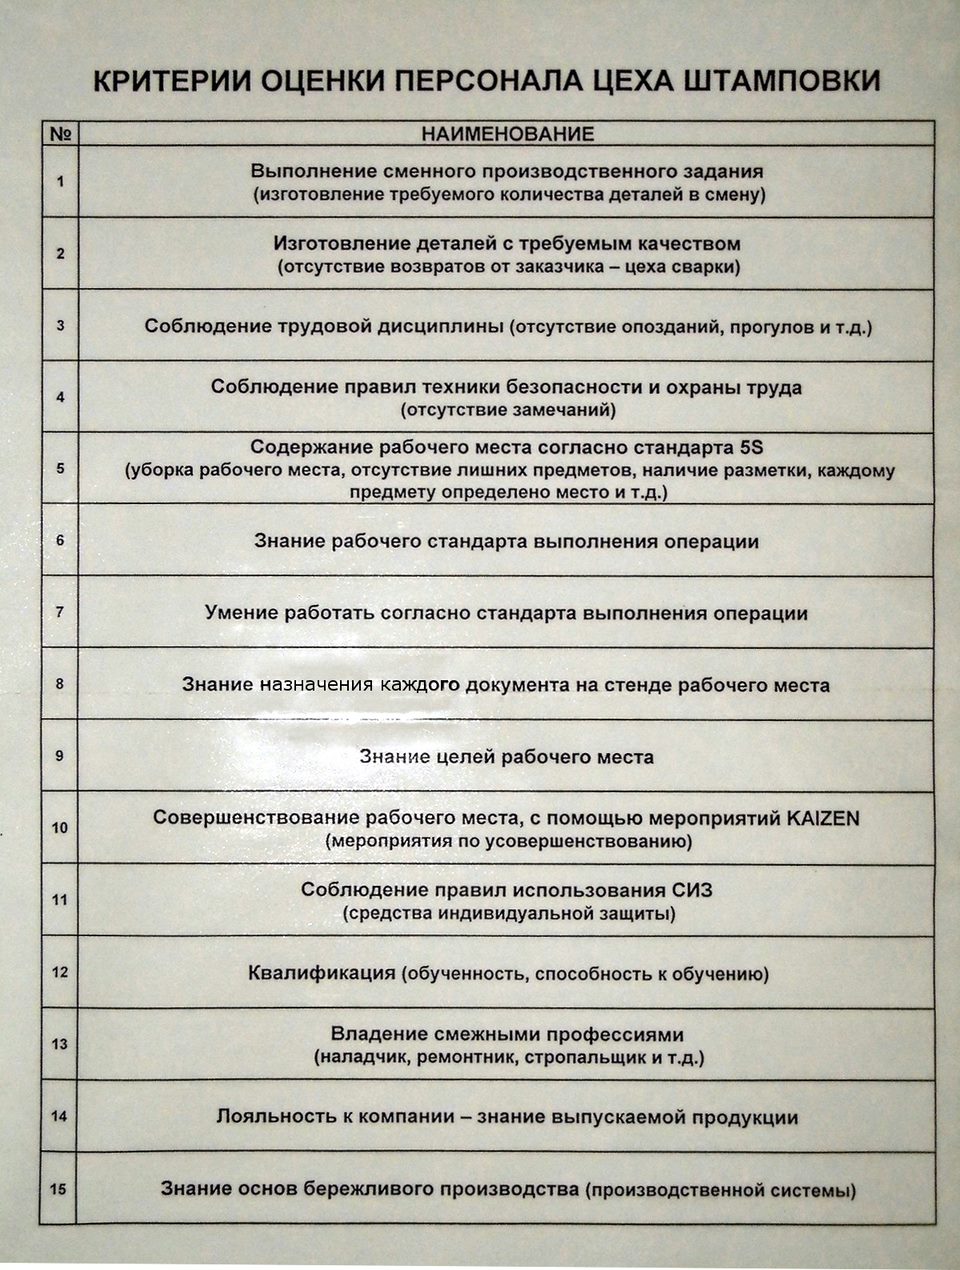 Фотокопия критерием оценки персонала цеха штамповки используемых для рейтинга показанного на Рис. 1. Источник: Репортаж со старта производства Lada Vesta.